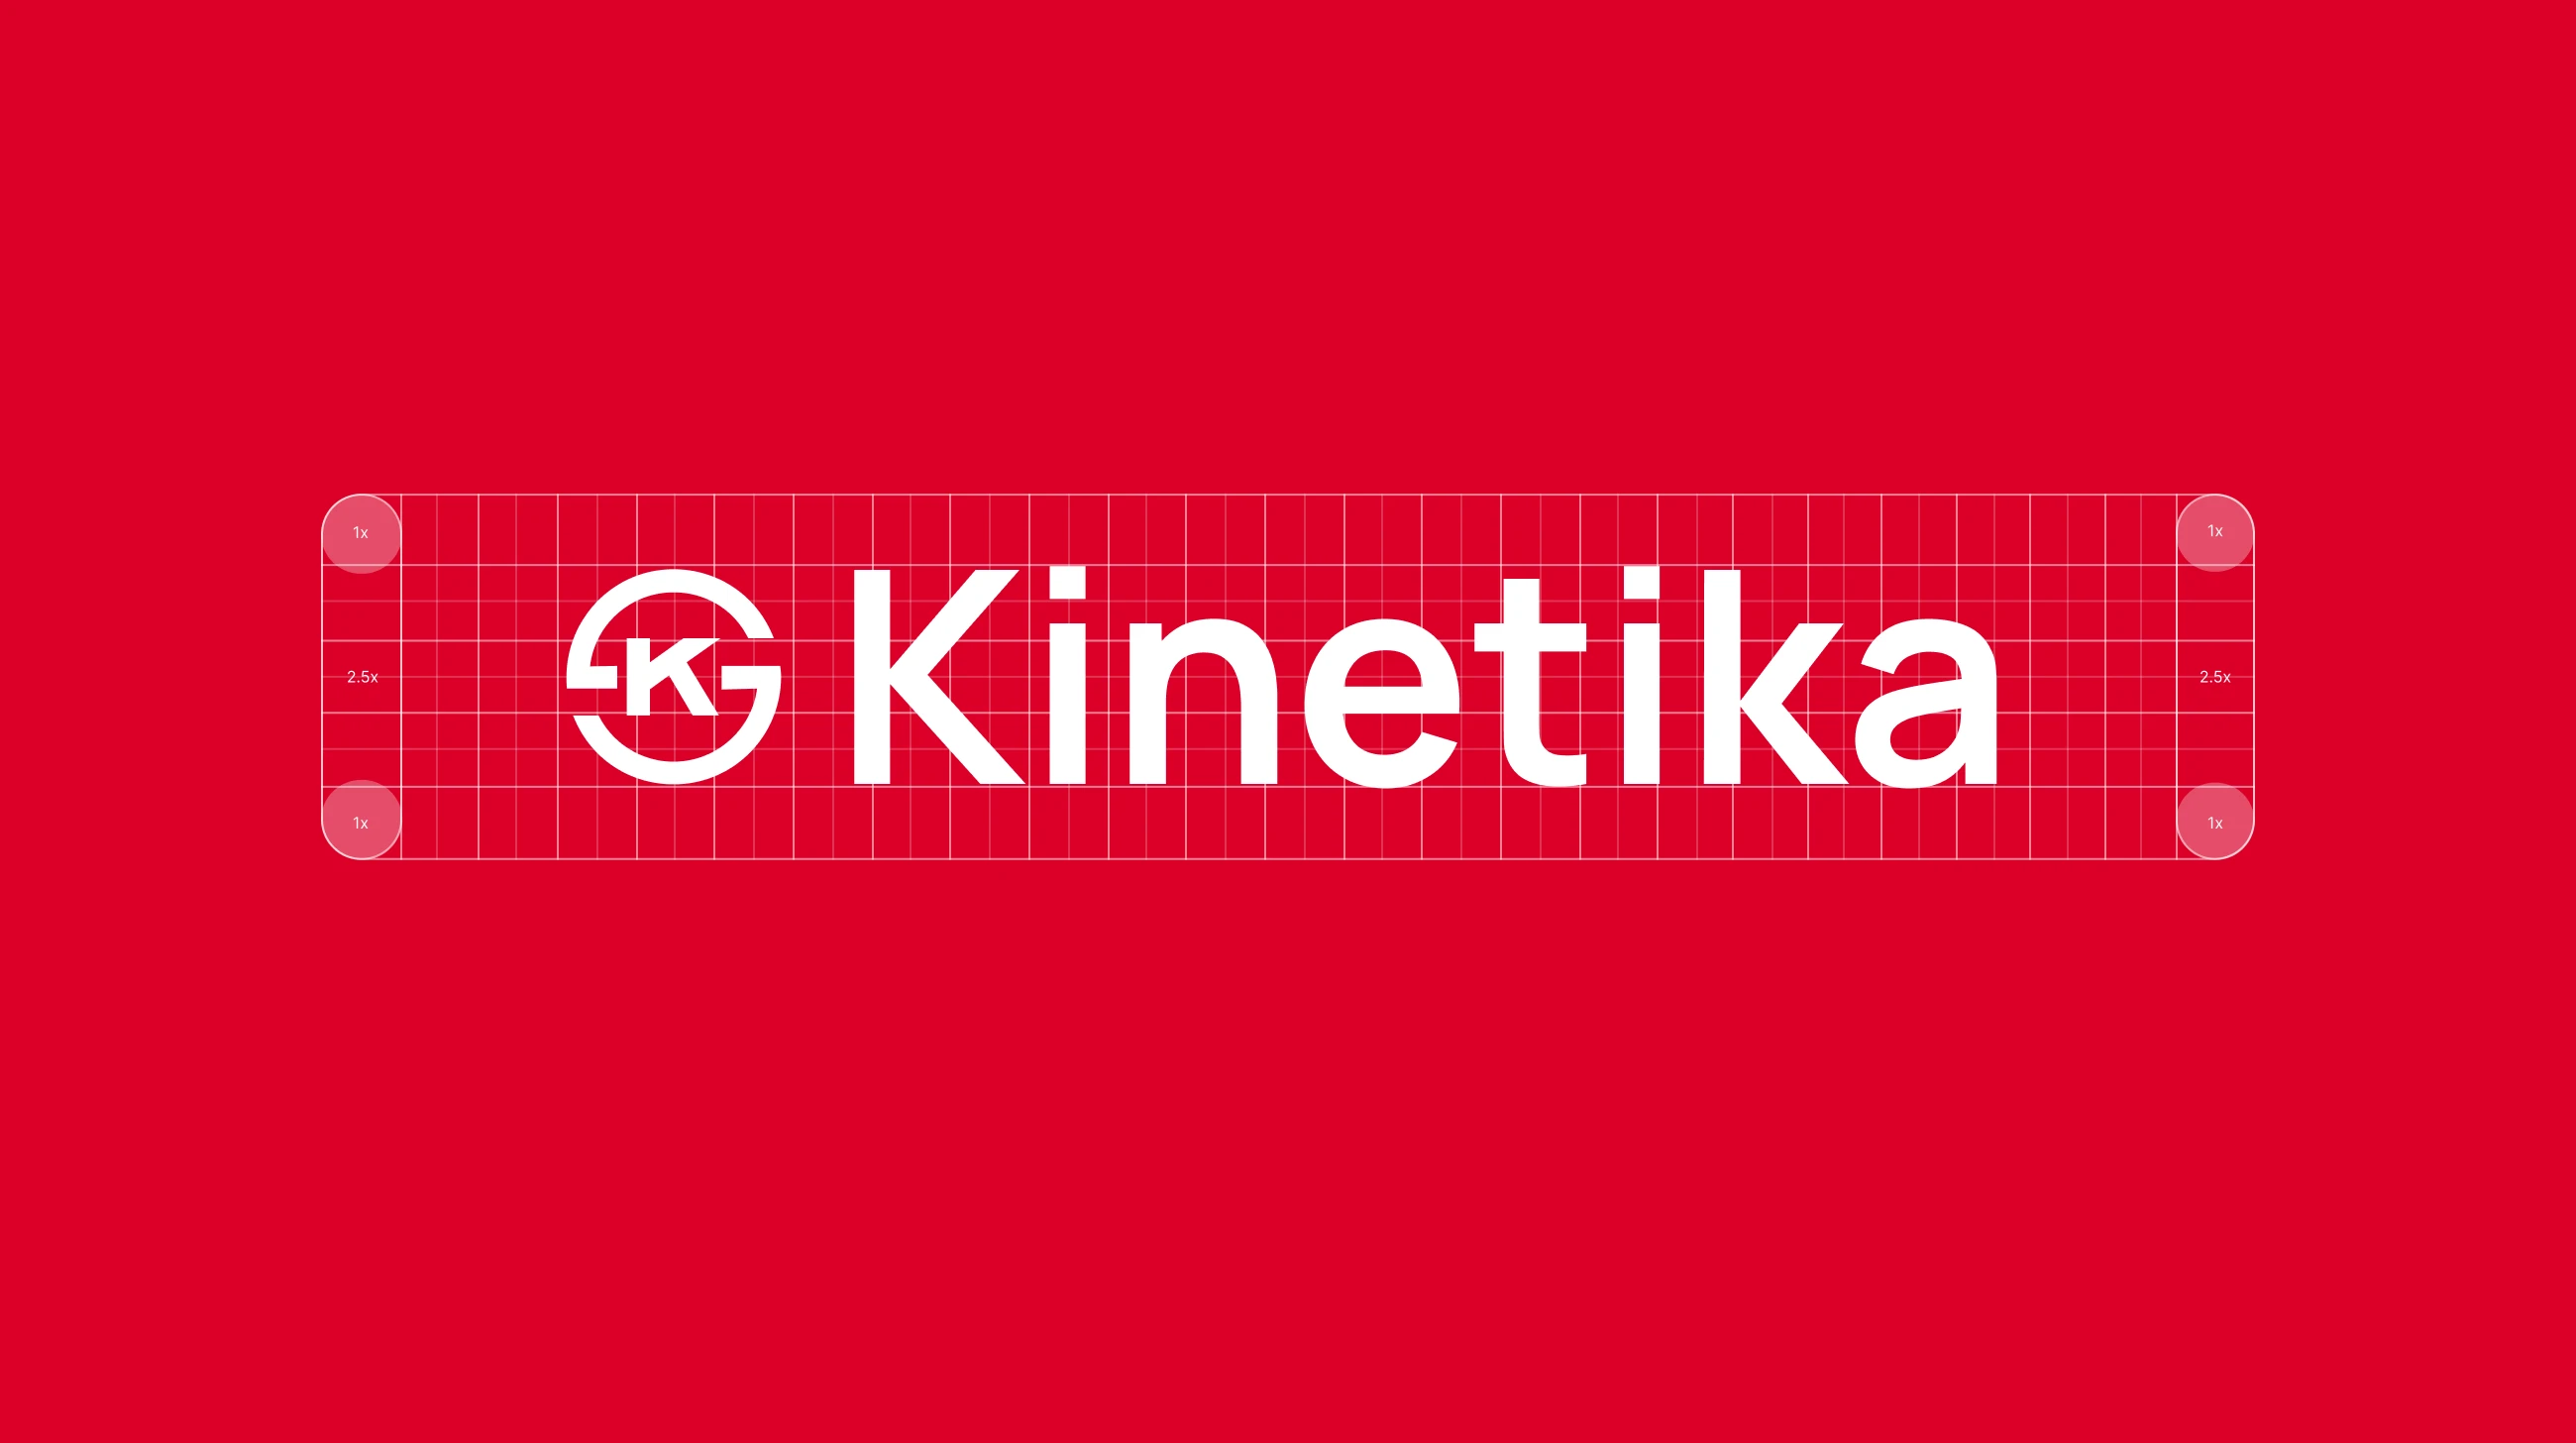 Kinetika logo grid